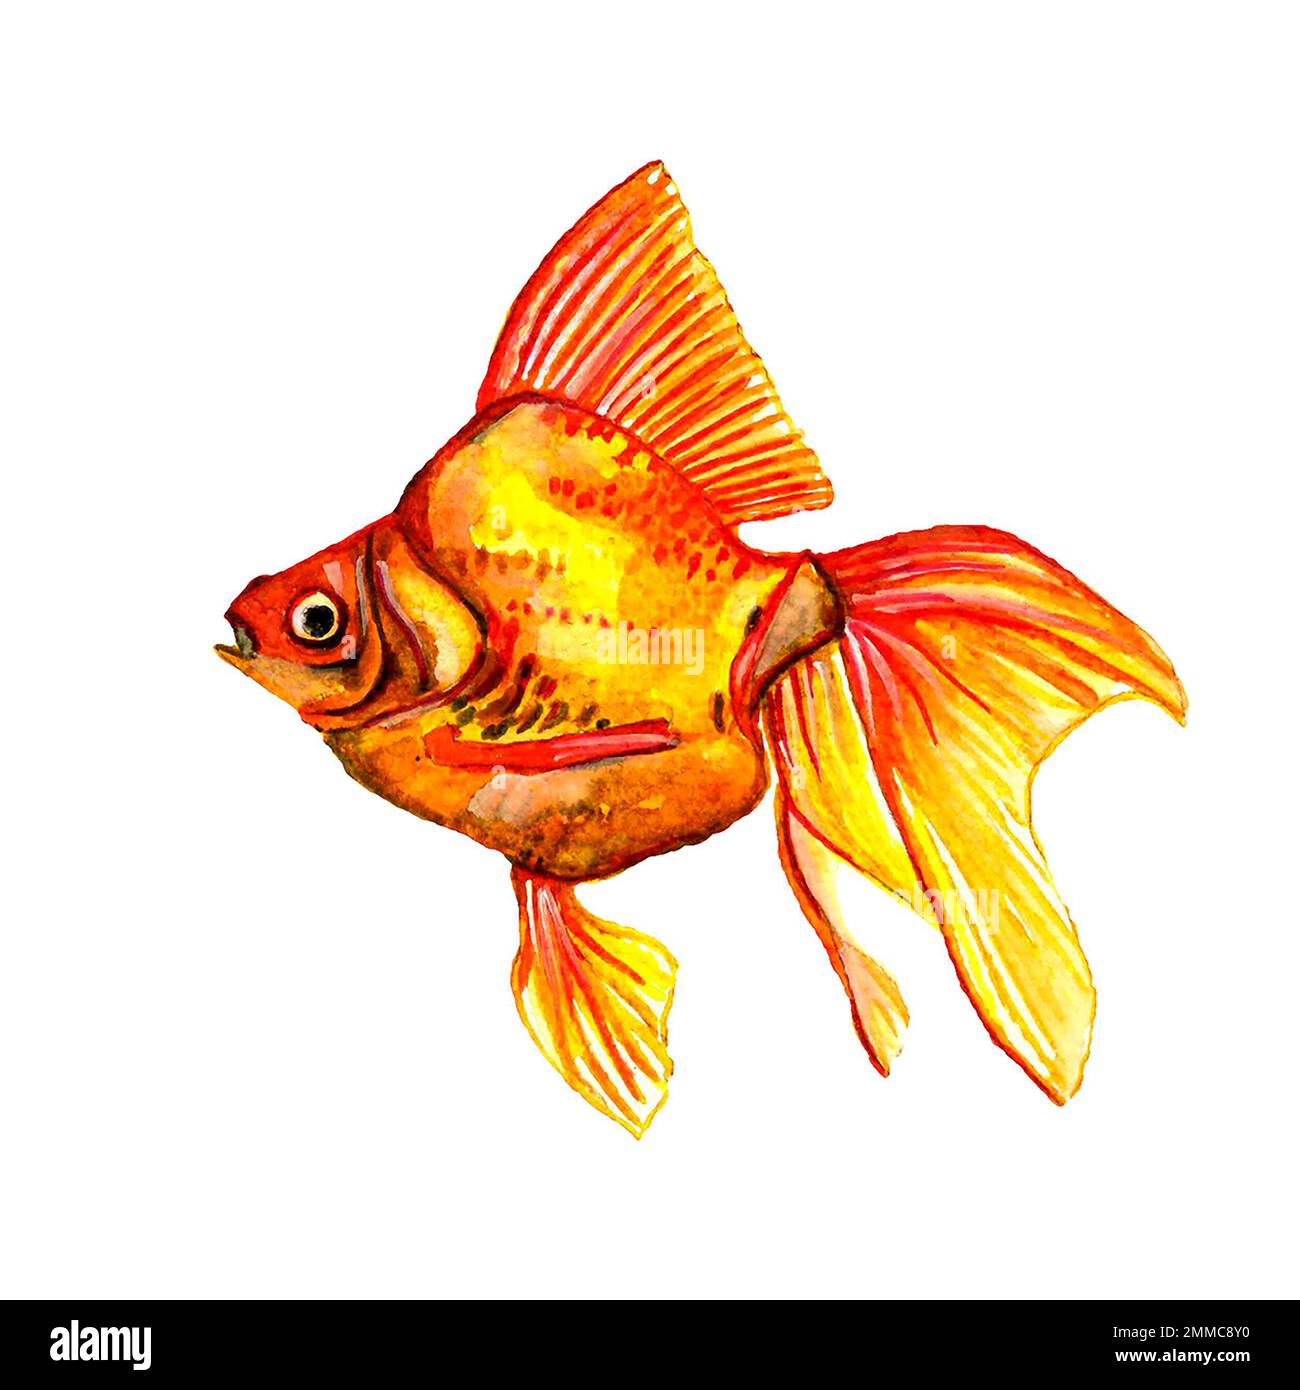 Aquarelle illustration dessinée à la main de la queue de poisson rouge de l'aquarium sur un fond blanc, isolée Banque D'Images